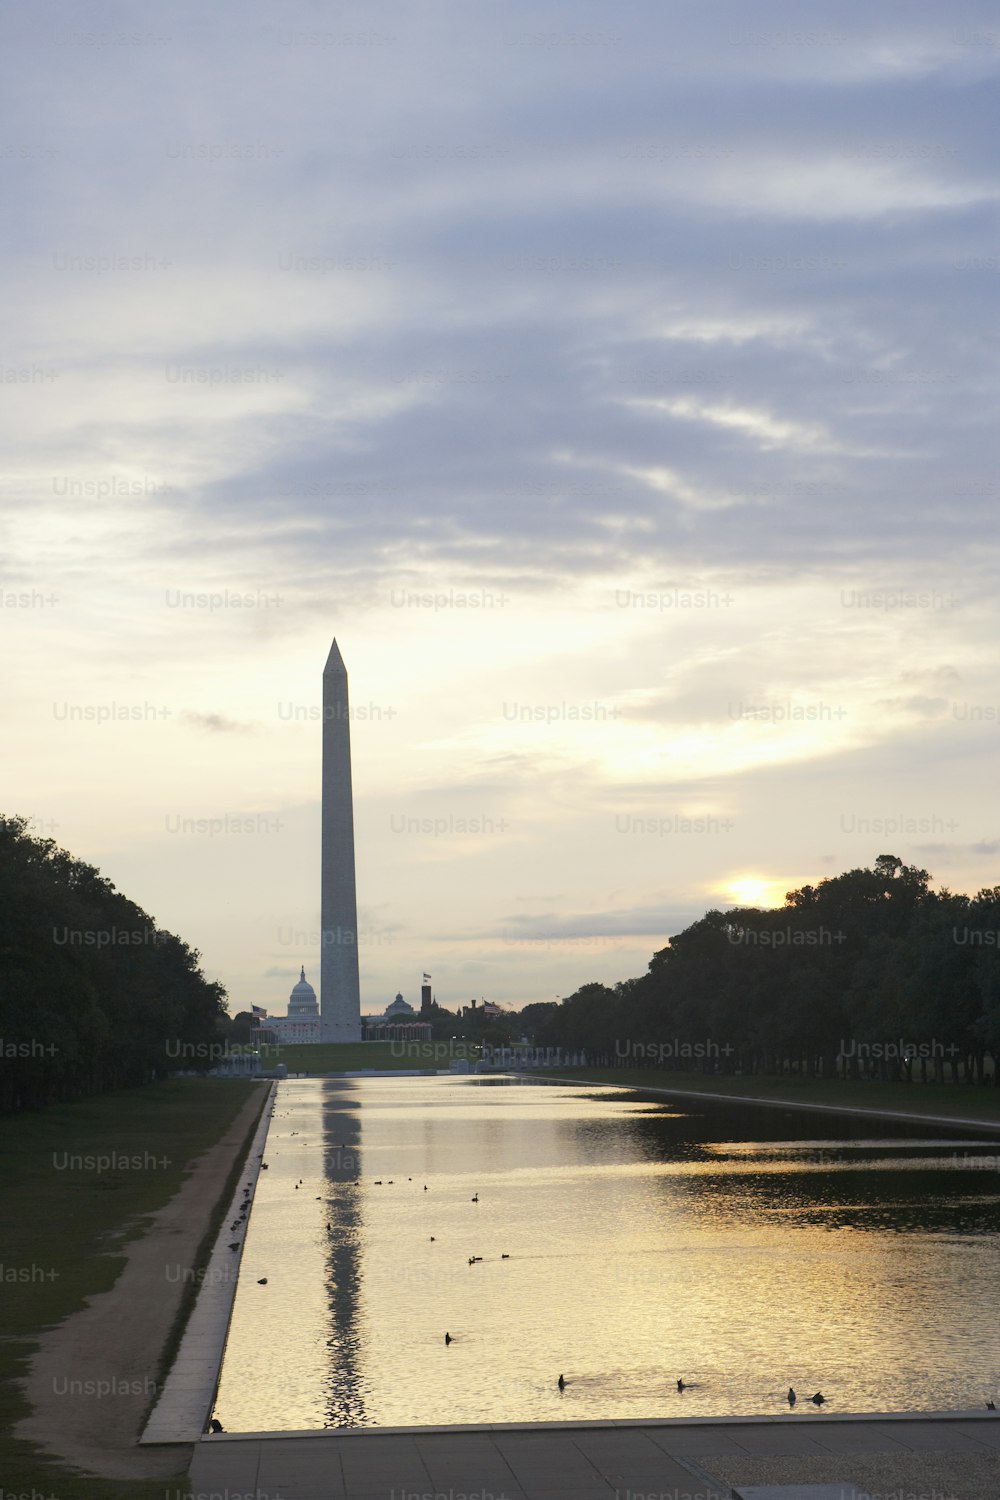 워싱턴 기념비와 반사되는 물웅덩이